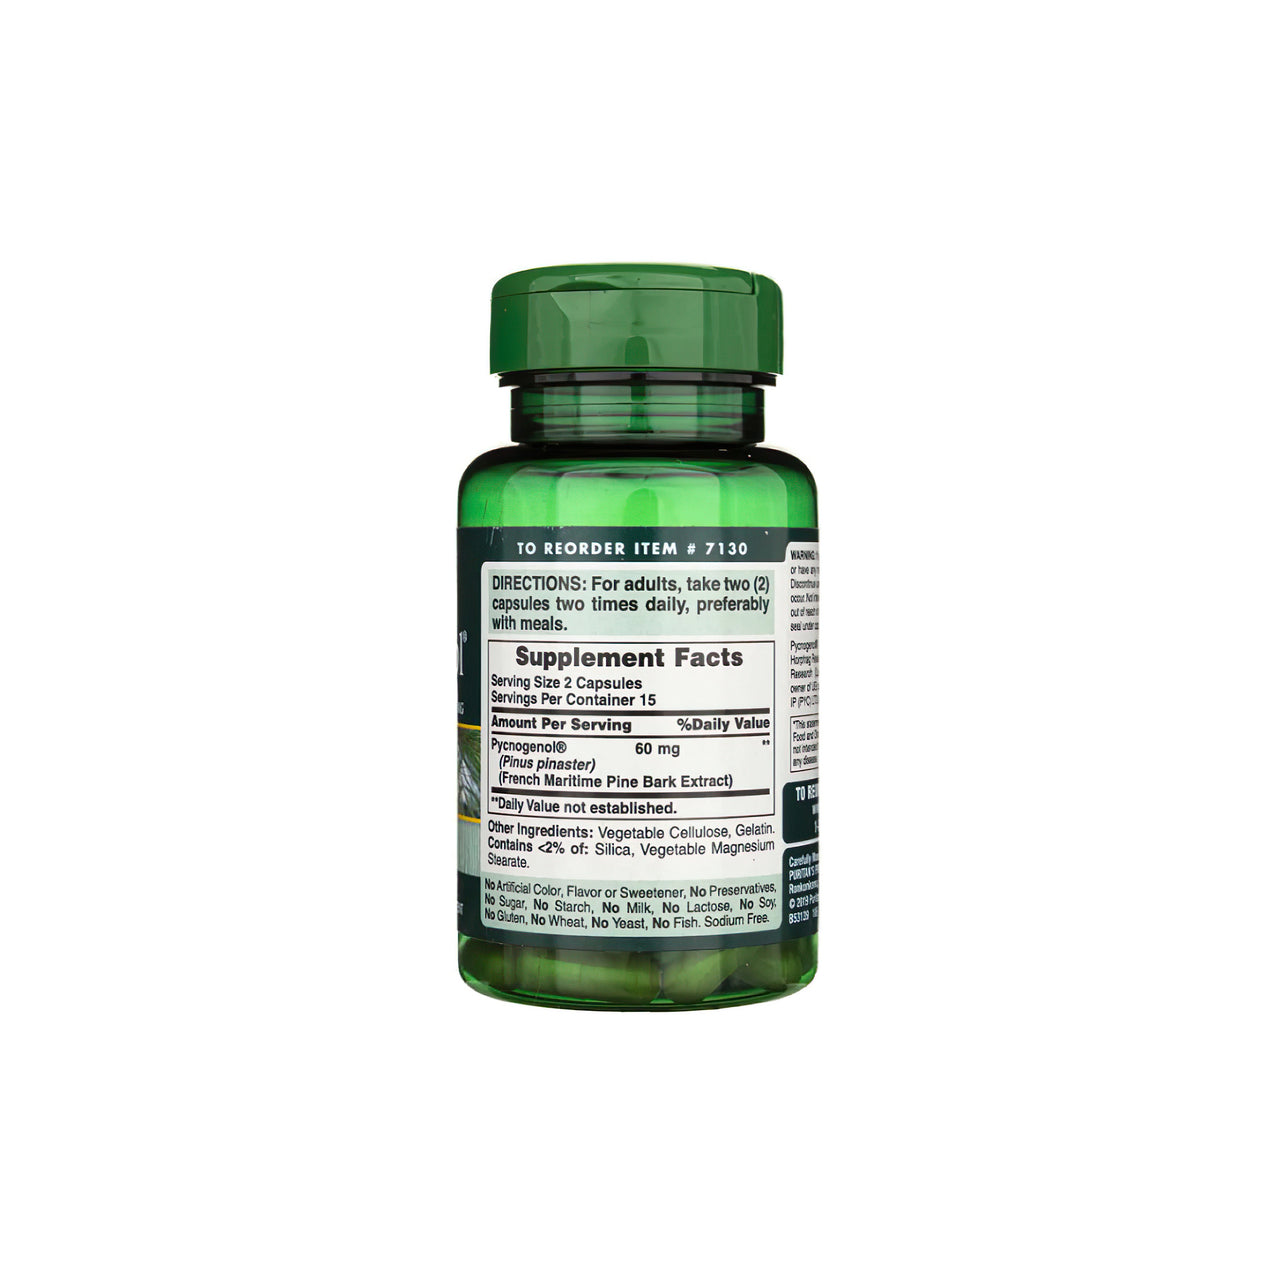 Eine Flasche Pycnogenol 30 mg 30 Rapid Release Capsules von Puritan's Pride mit flavonoiden Proanthocyaniden.